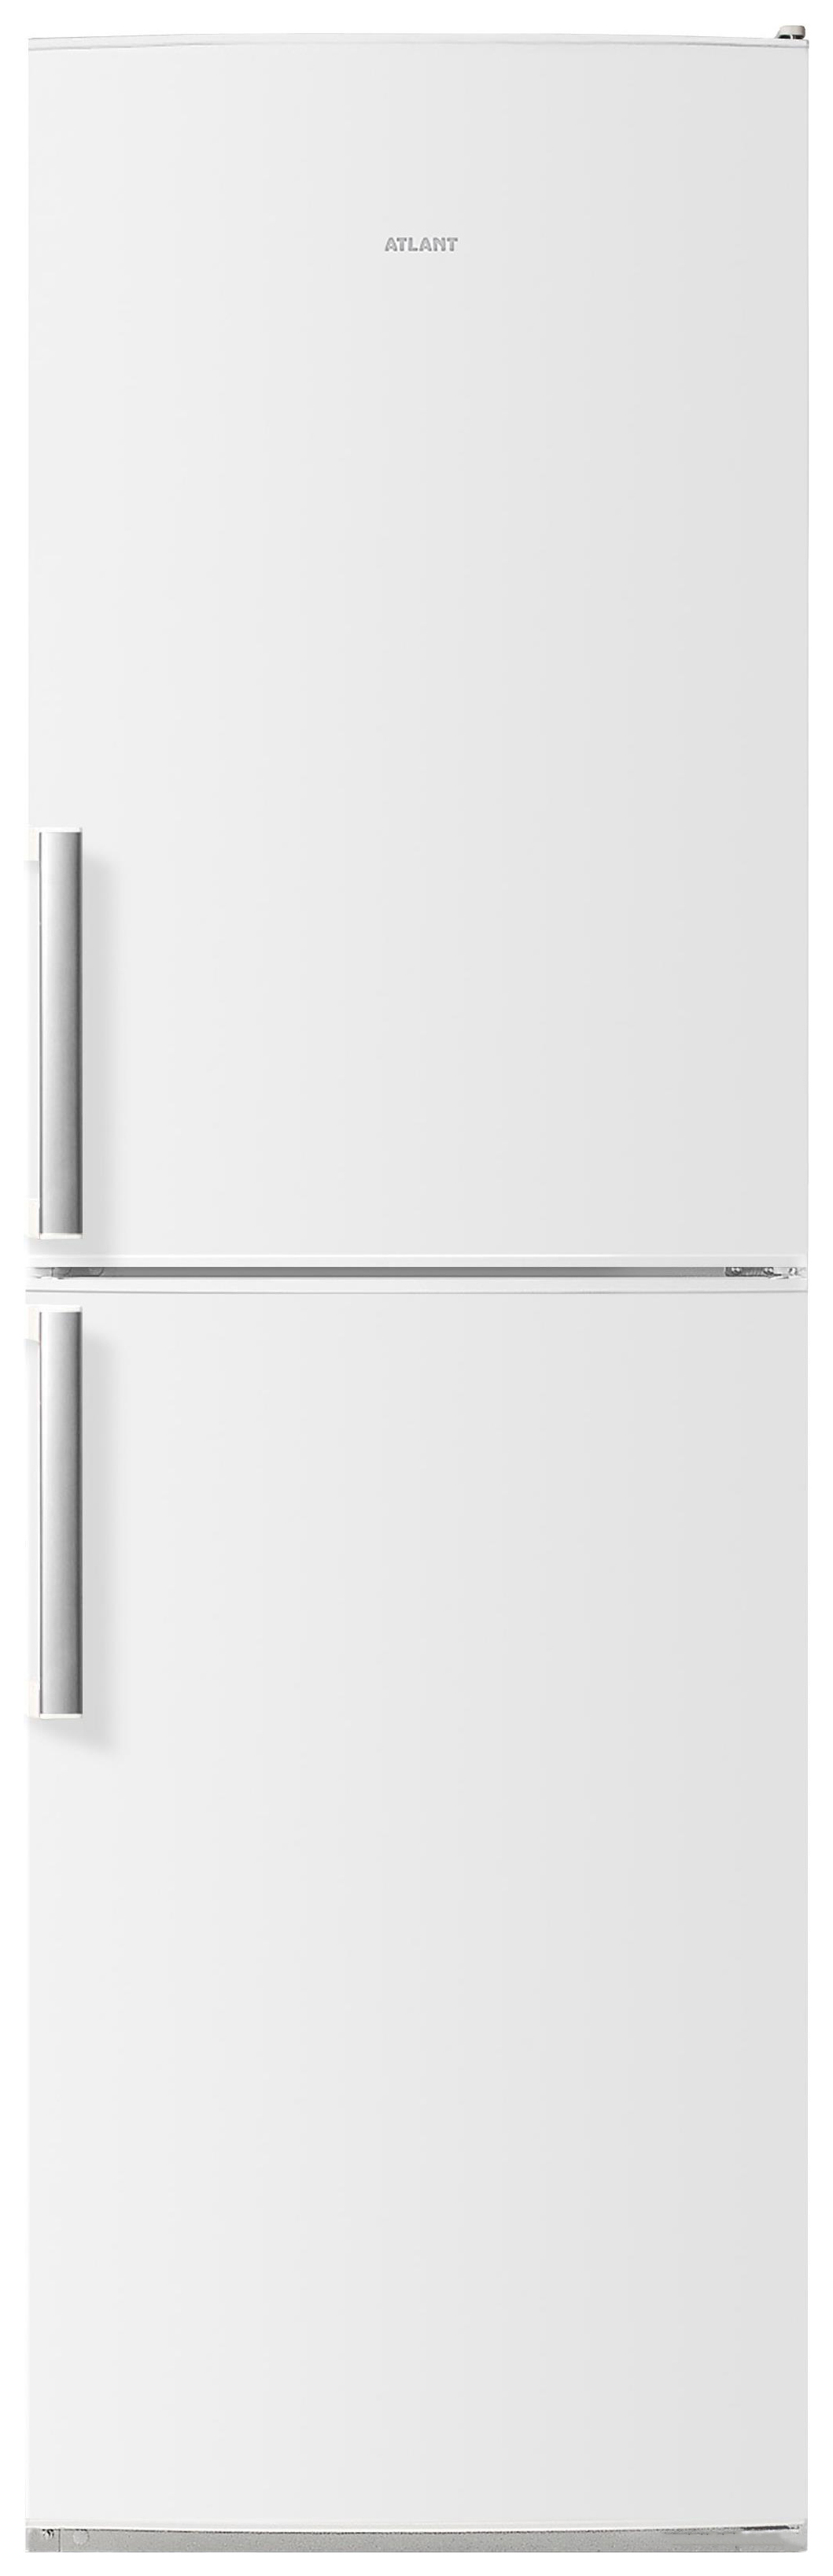 Холодильник ATLANT ХМ 4423-000 N белый двухкамерный холодильник atlant хм 4423 080 n